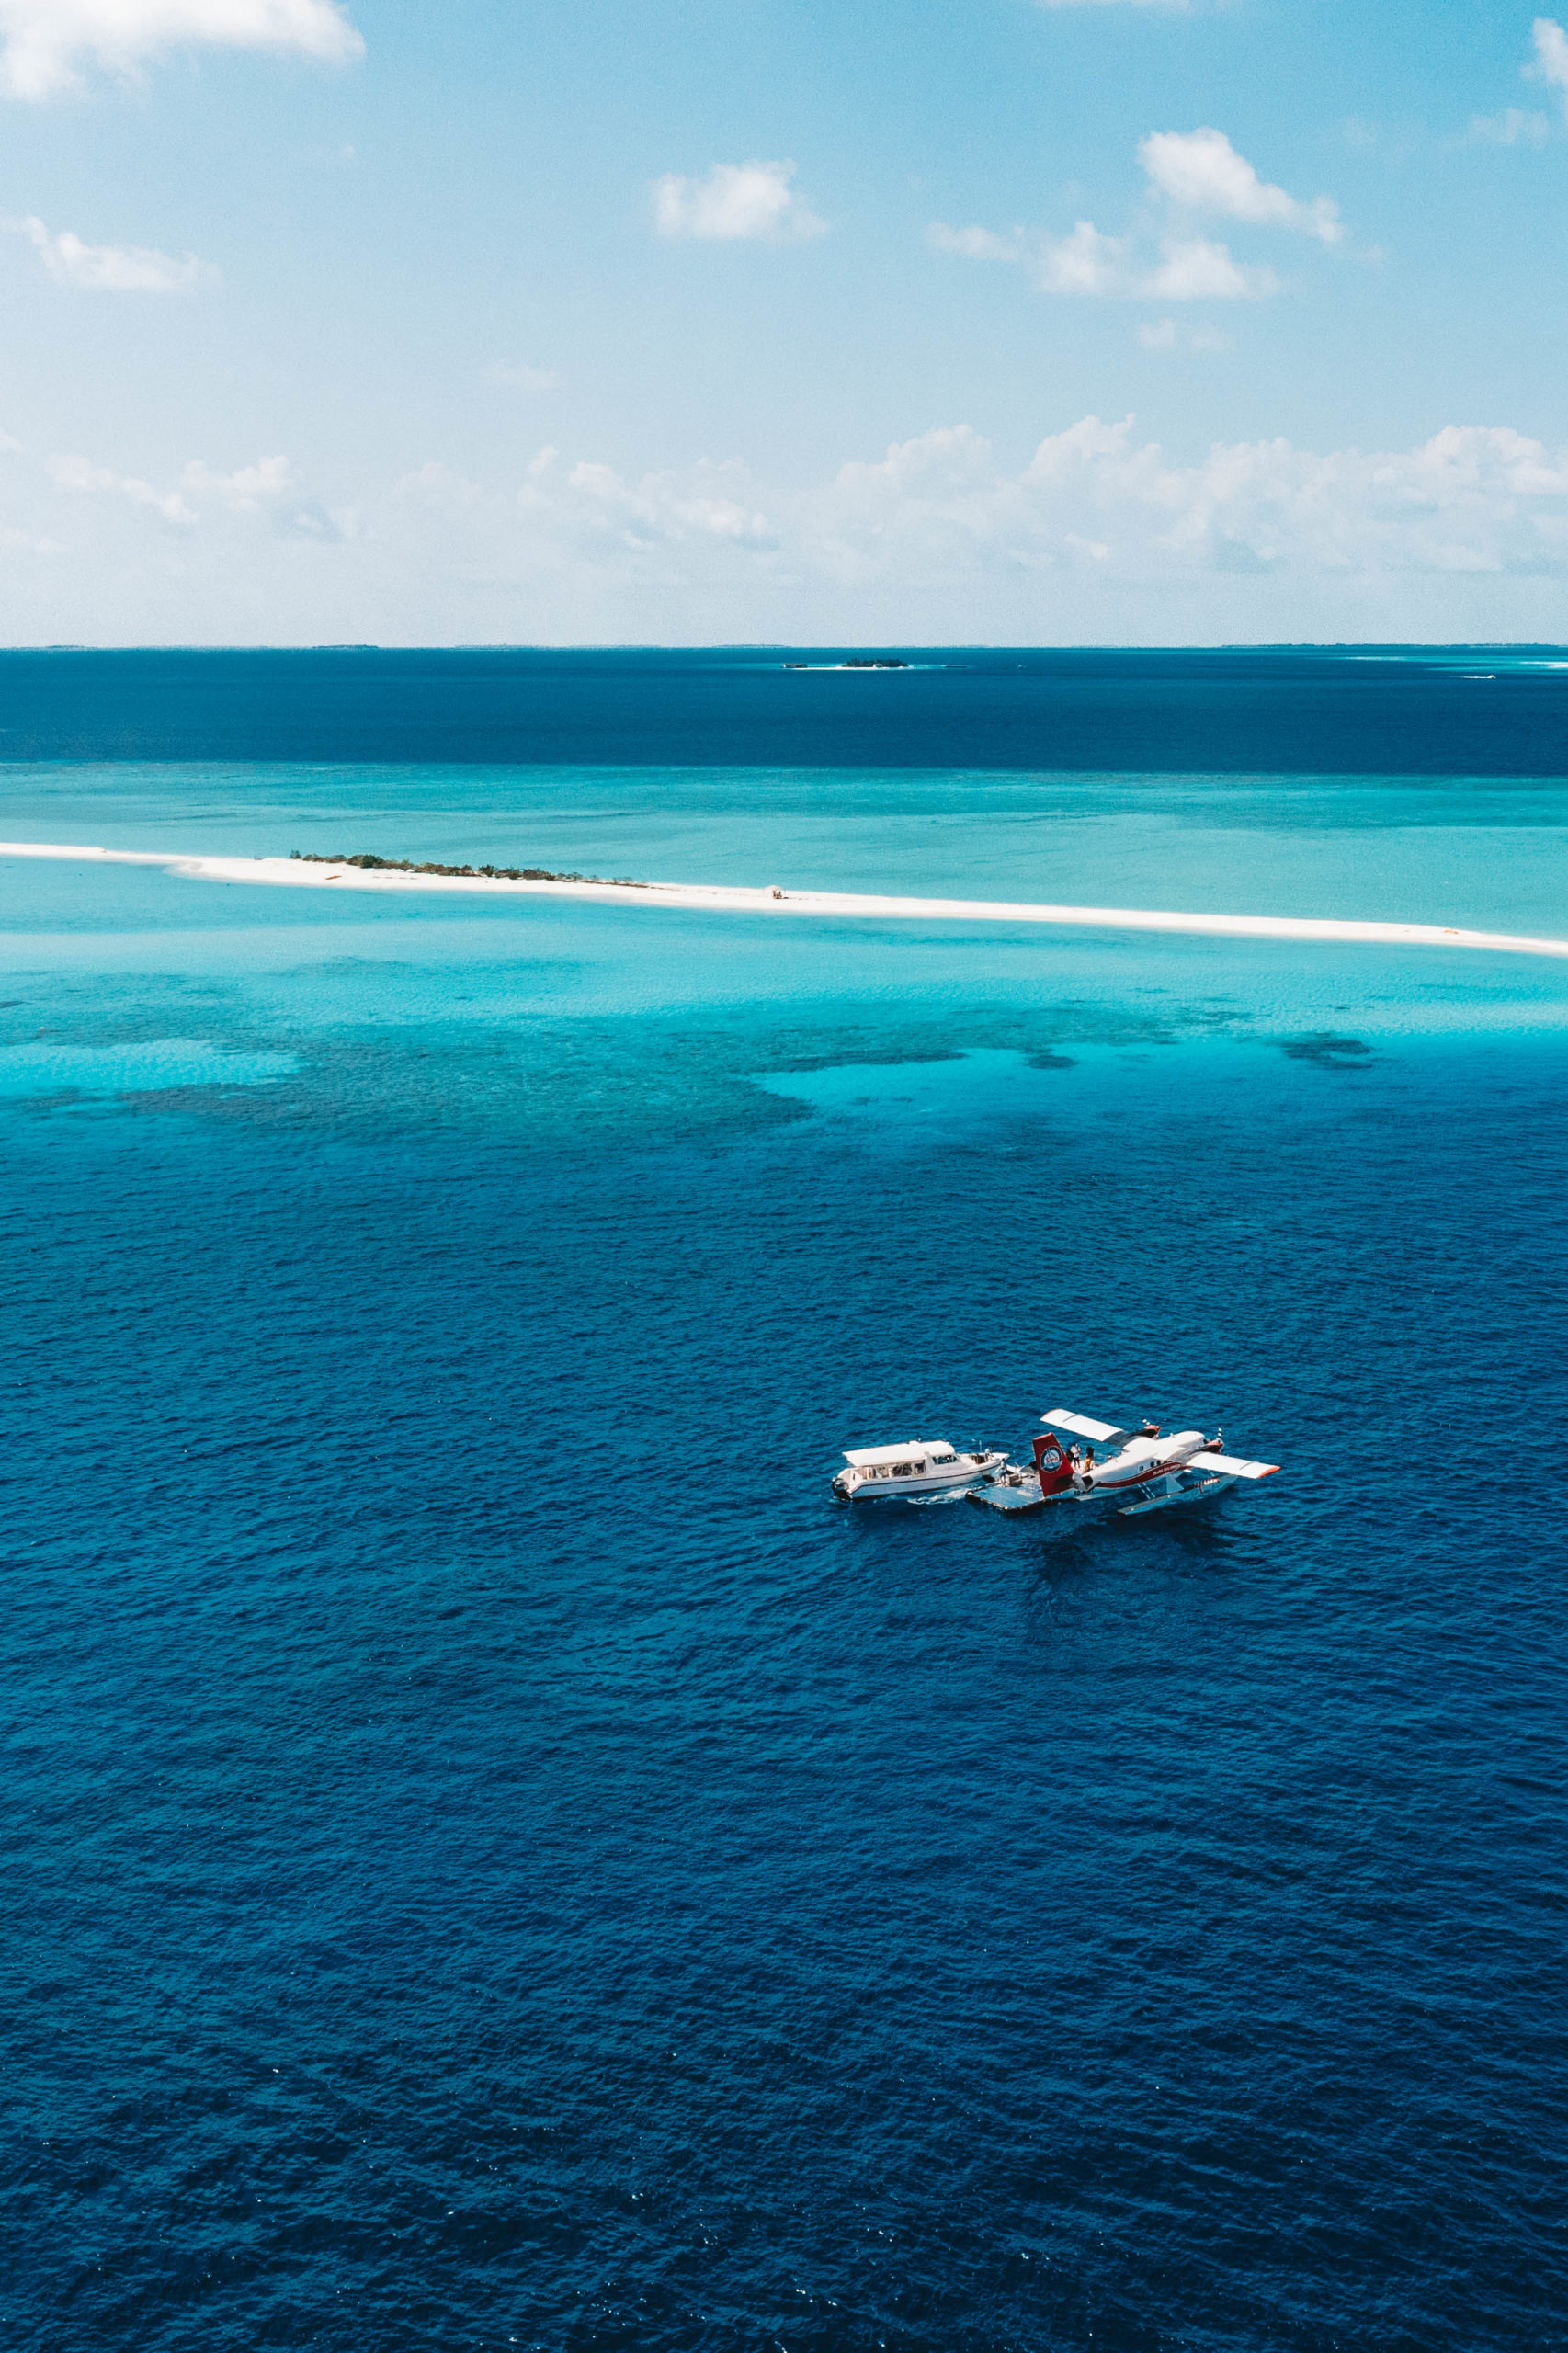 Drone shot of maldives island, boat and sea plane